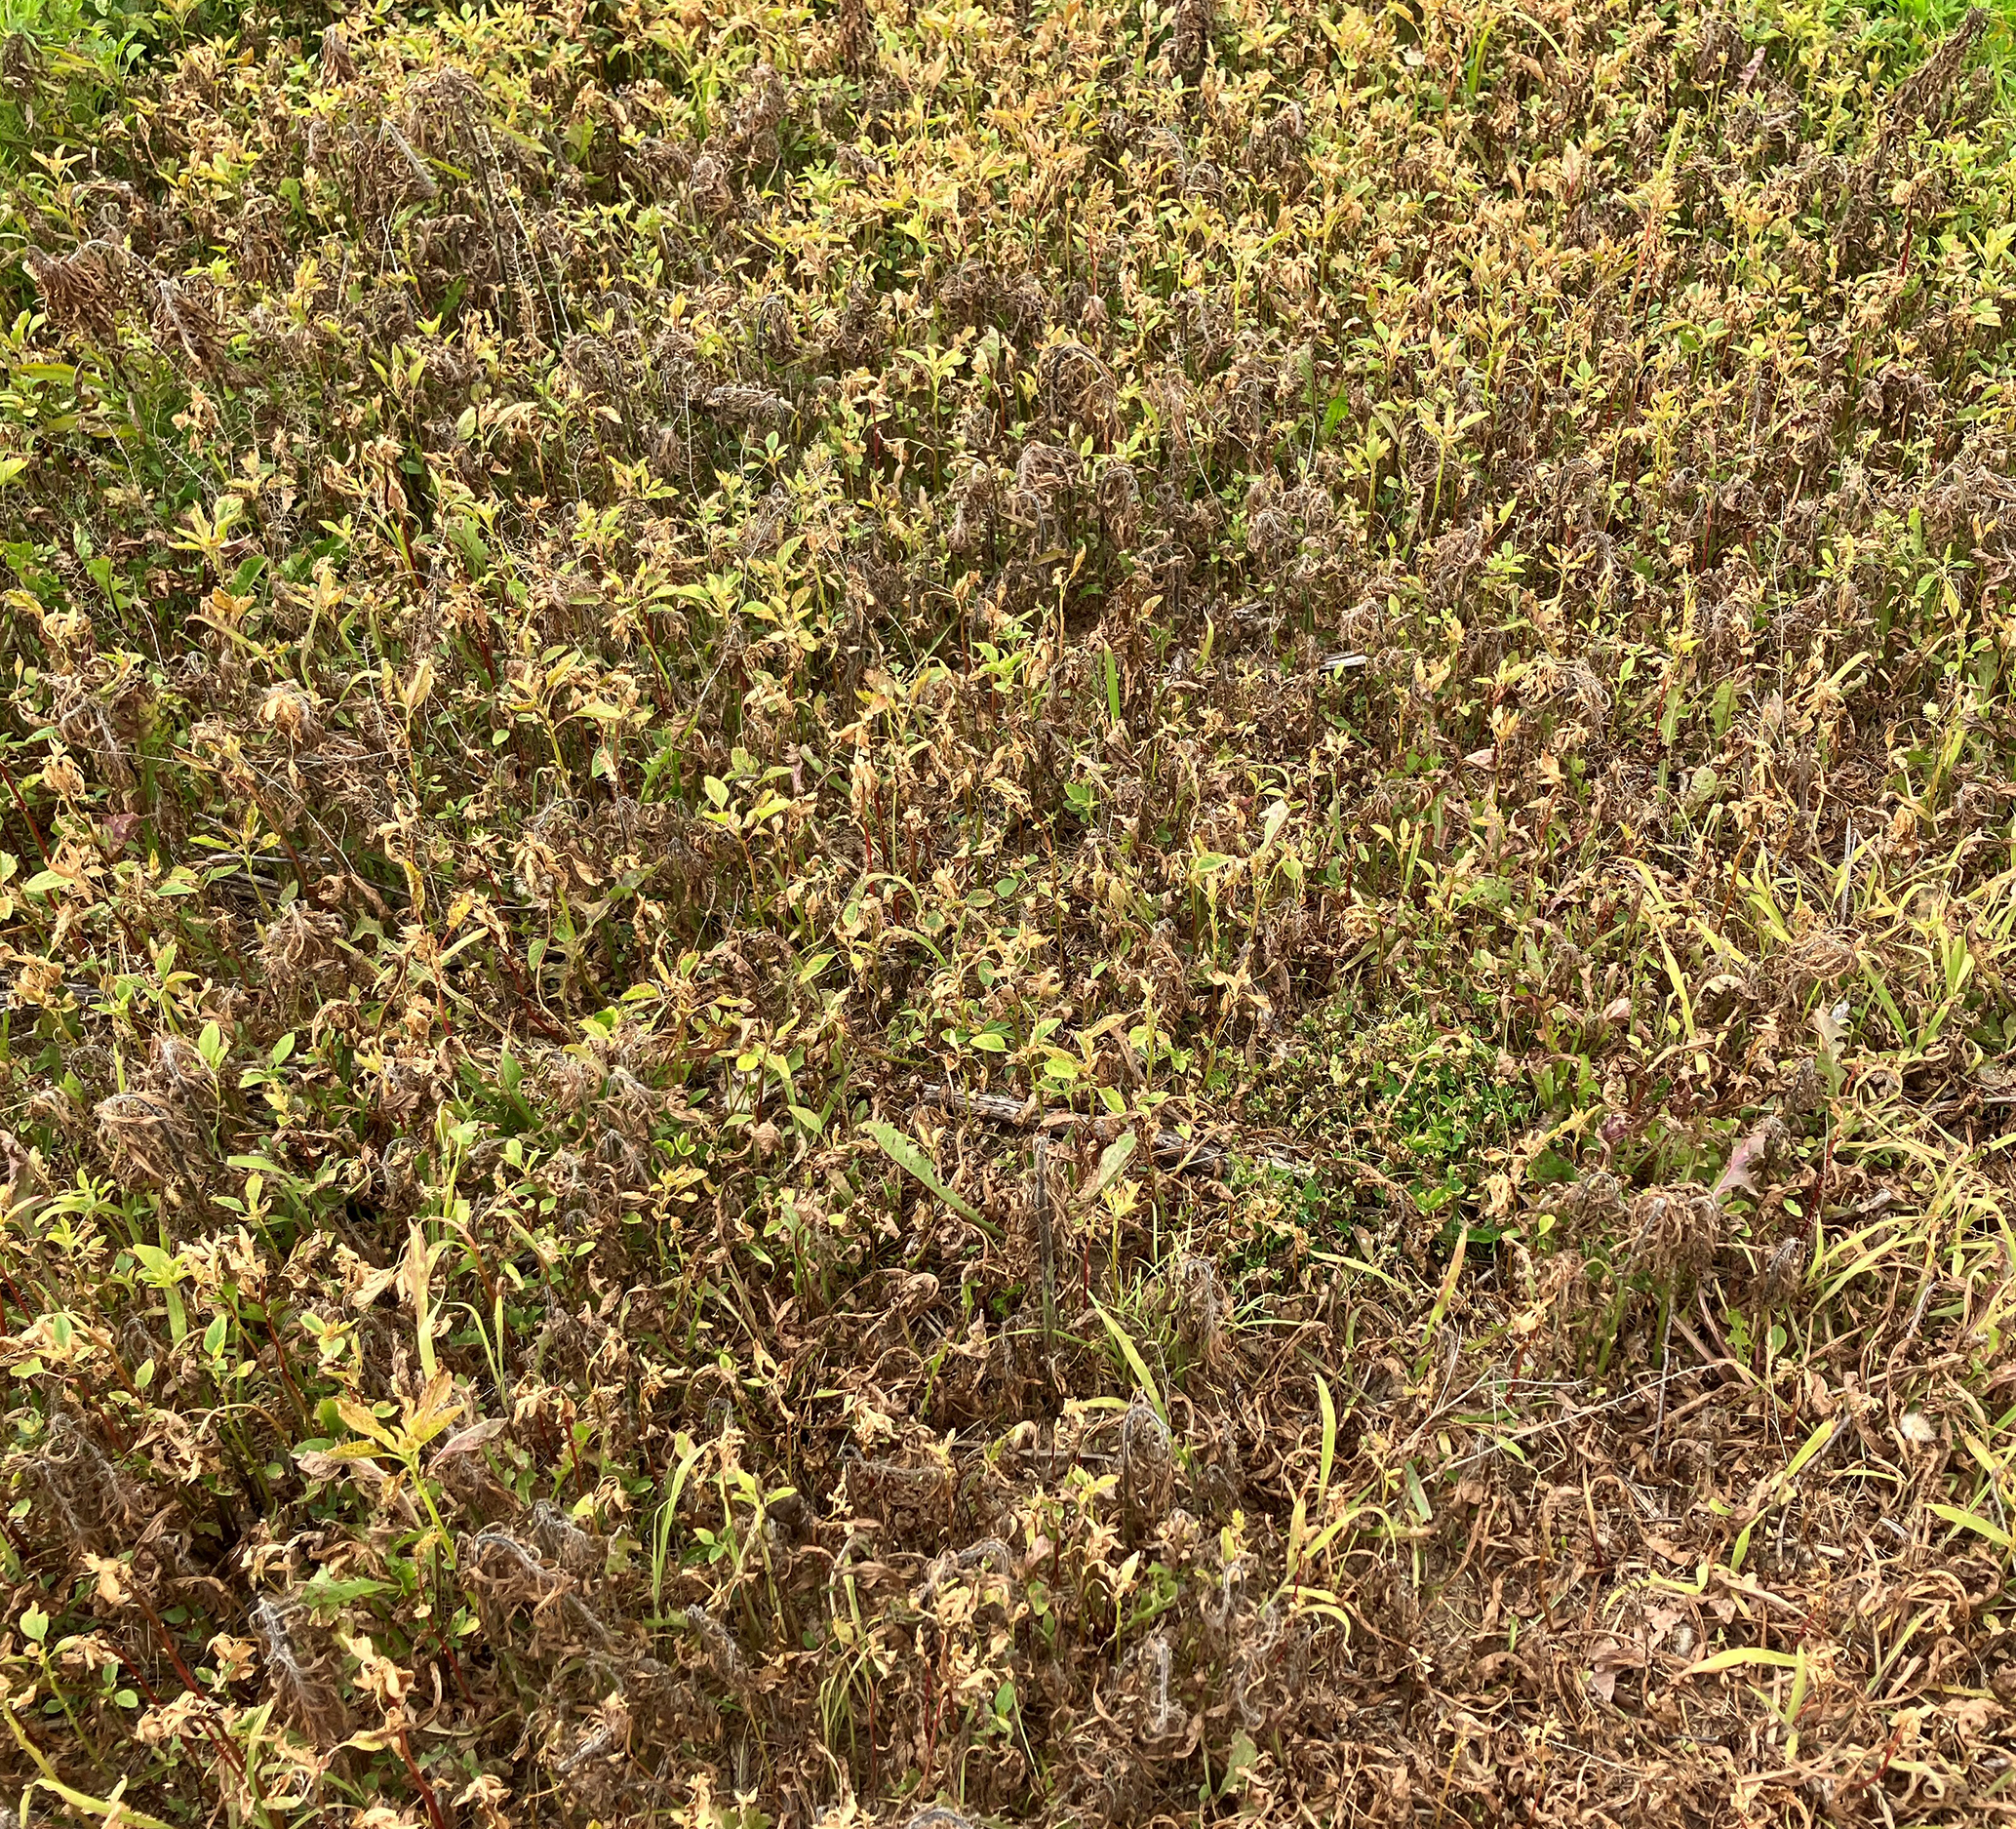 Broadleaf weeds after burndown herbicide application in soybean field